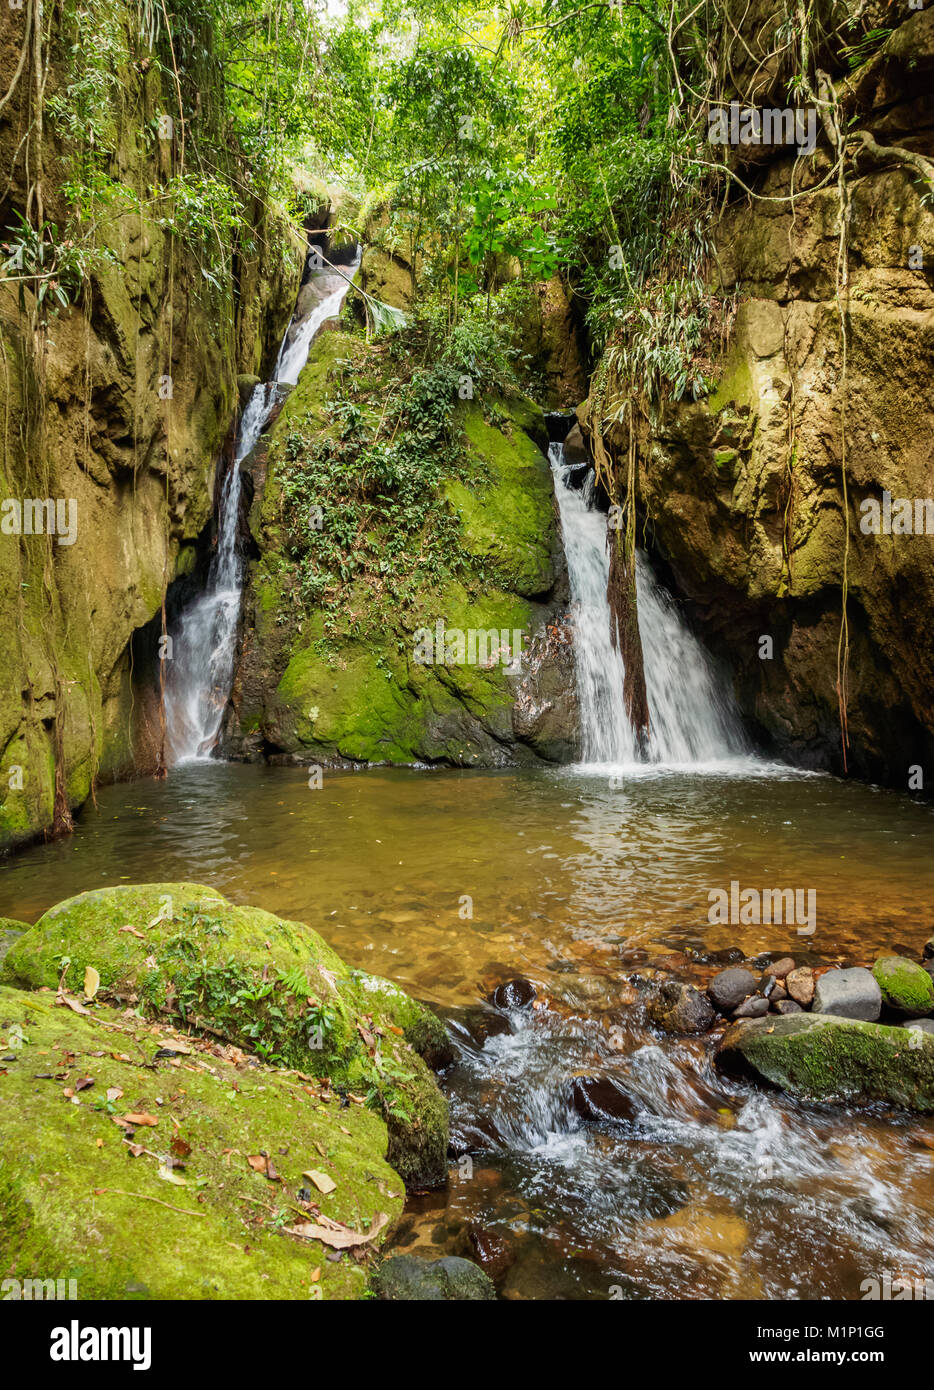 Cachoeira Indiana Jones, cascade à Boa Esperanca de Cima, Nova Friburgo municipalité, état de Rio de Janeiro, Brésil, Amérique du Sud Banque D'Images